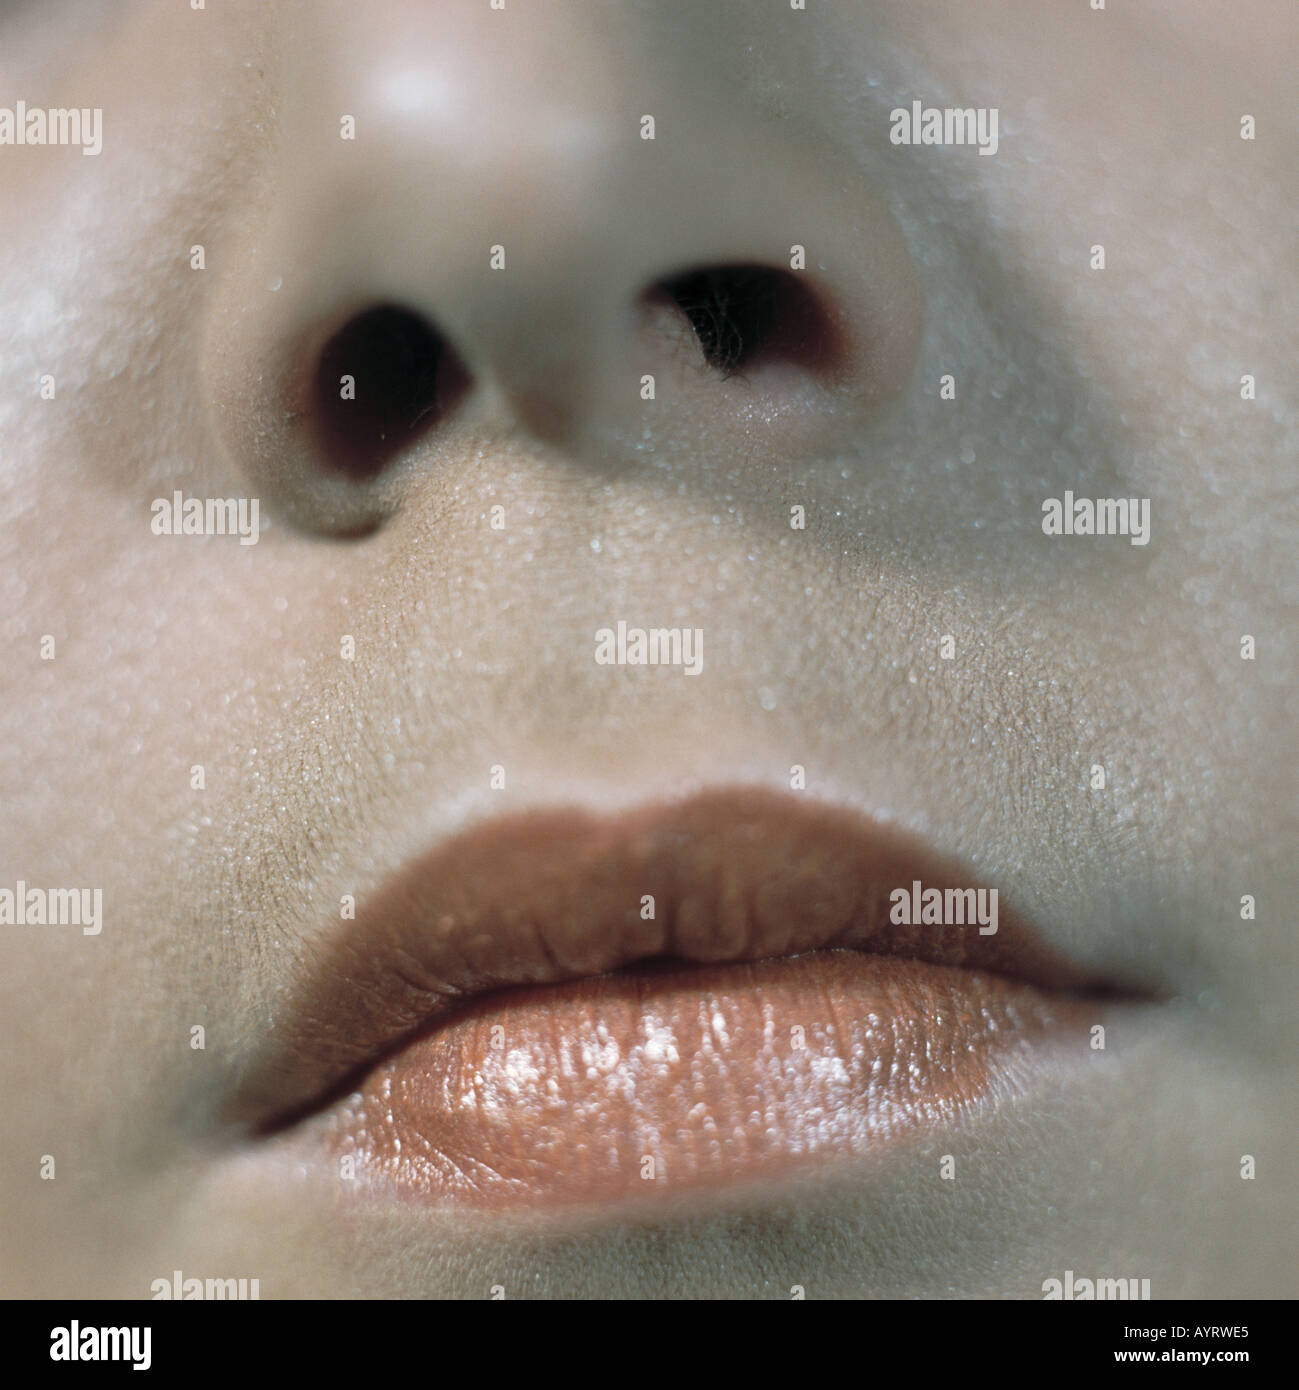 Maedchen, Gesichtspartie, Teilansicht von Mund und Nase, geschminkte Lippen, Schminke, Monika Banque D'Images